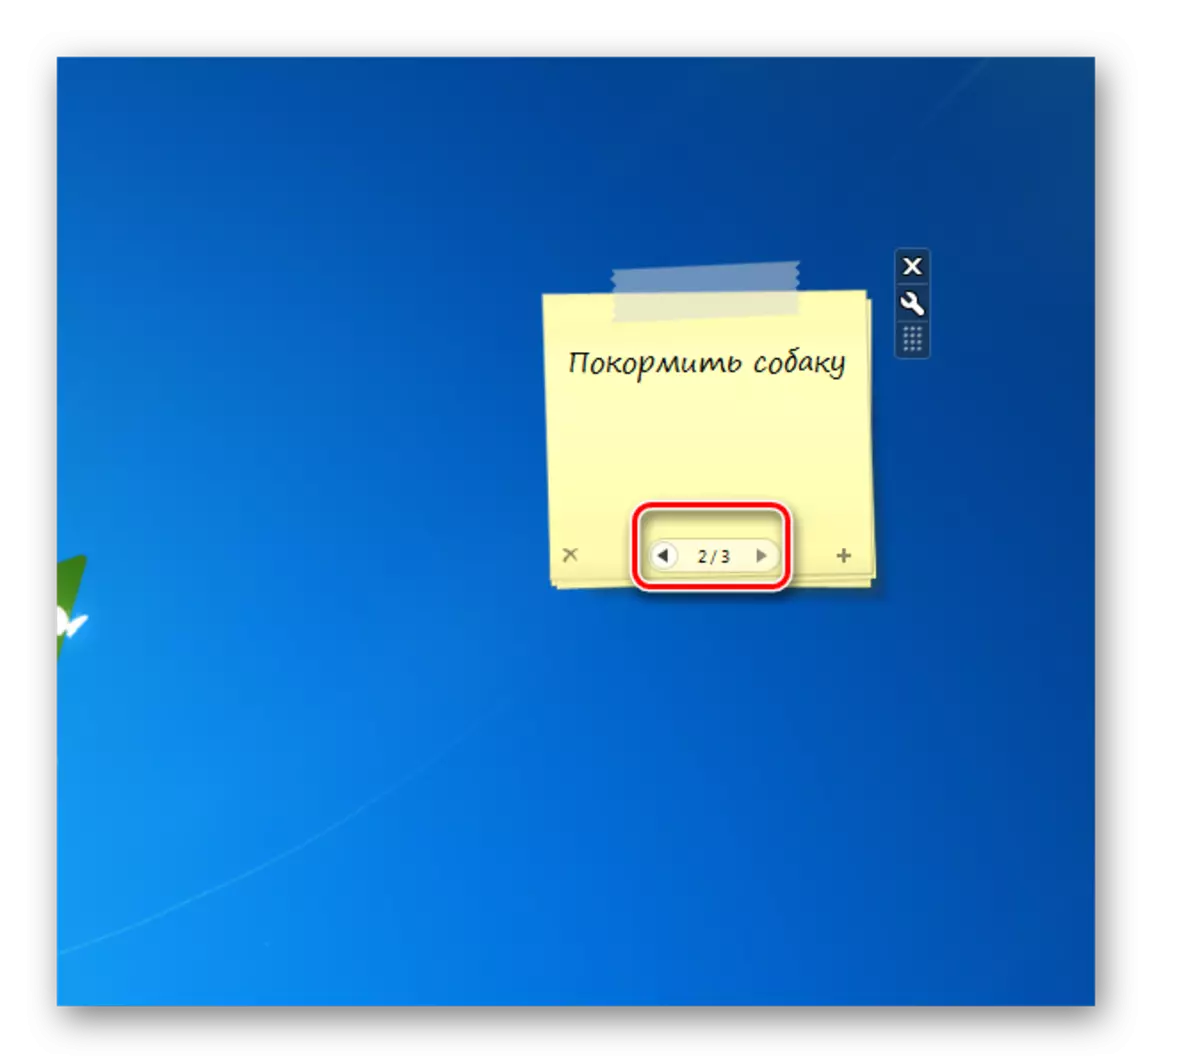 Navnîşa navîgasyonê di navbera rûpelan li Chameleon NotesColour Sticker Gadget Interface li ser sermasê li Windows 7